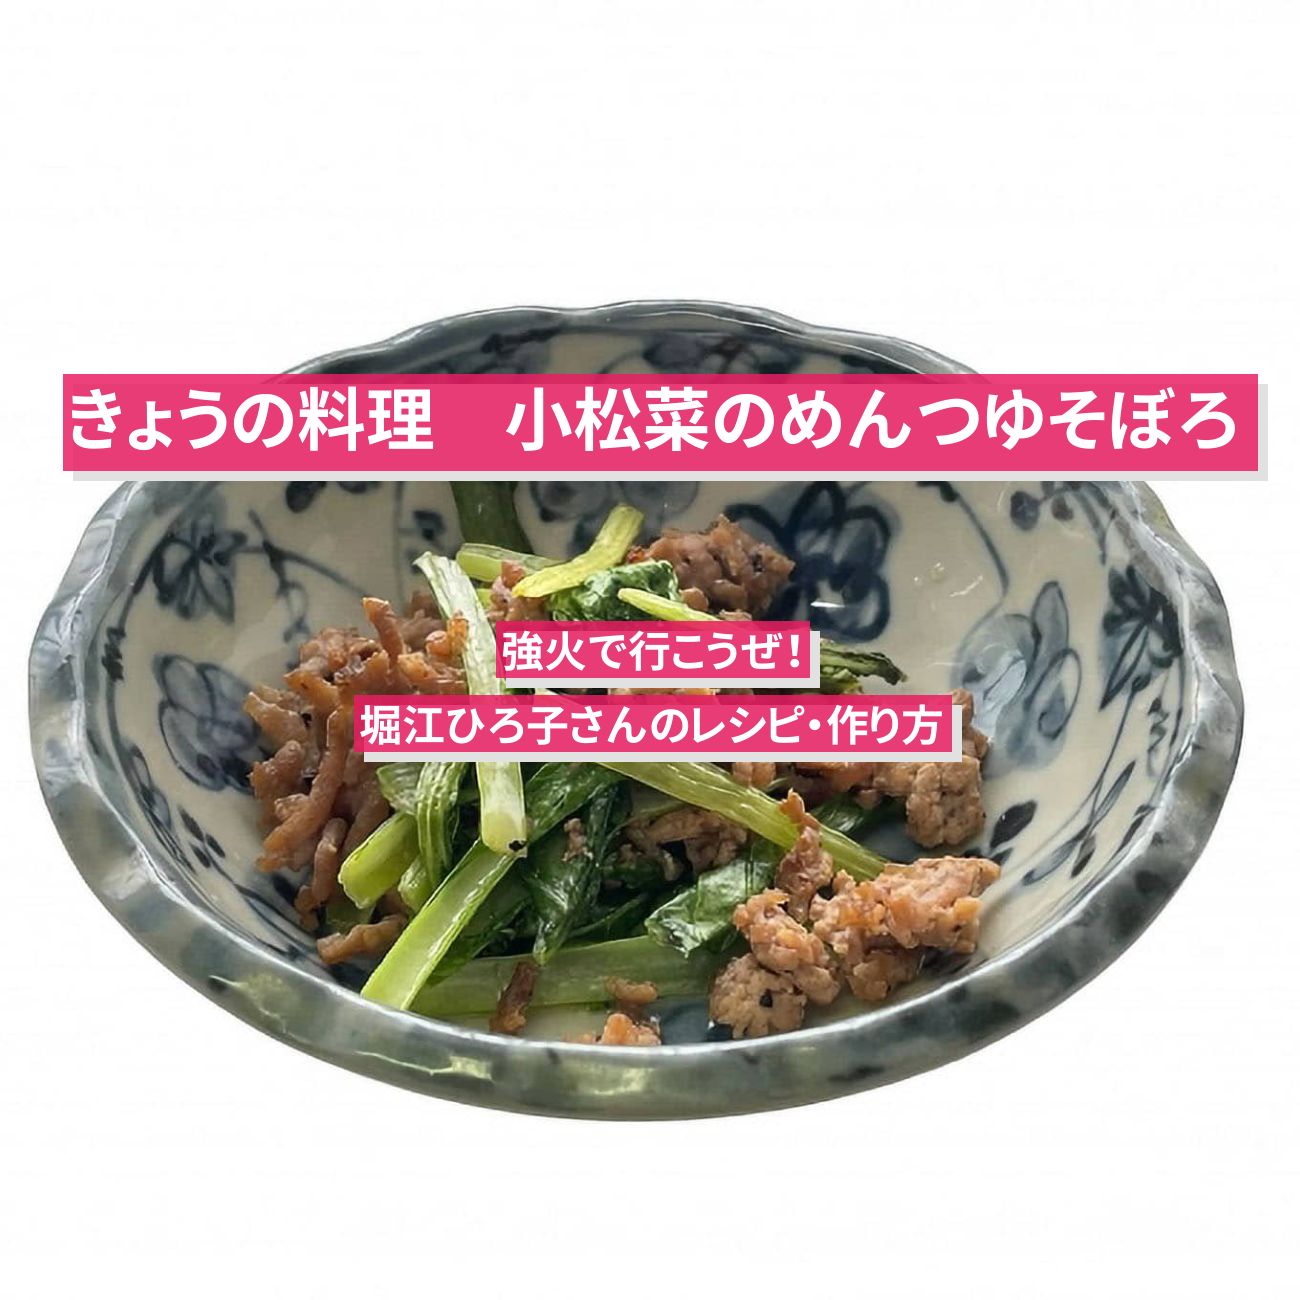 【きょうの料理】『小松菜のめんつゆそぼろ』堀江ひろ子さんのレシピ・作り方